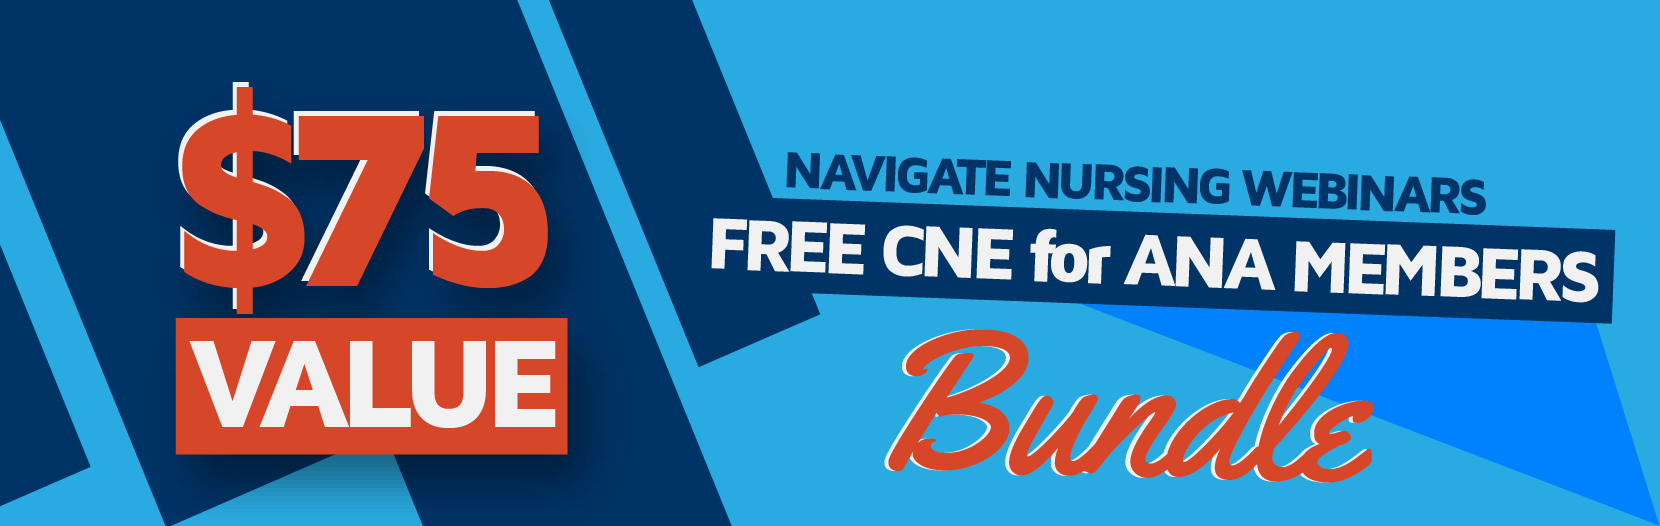 Navigate-Nursing-Banners_$75-Value.png